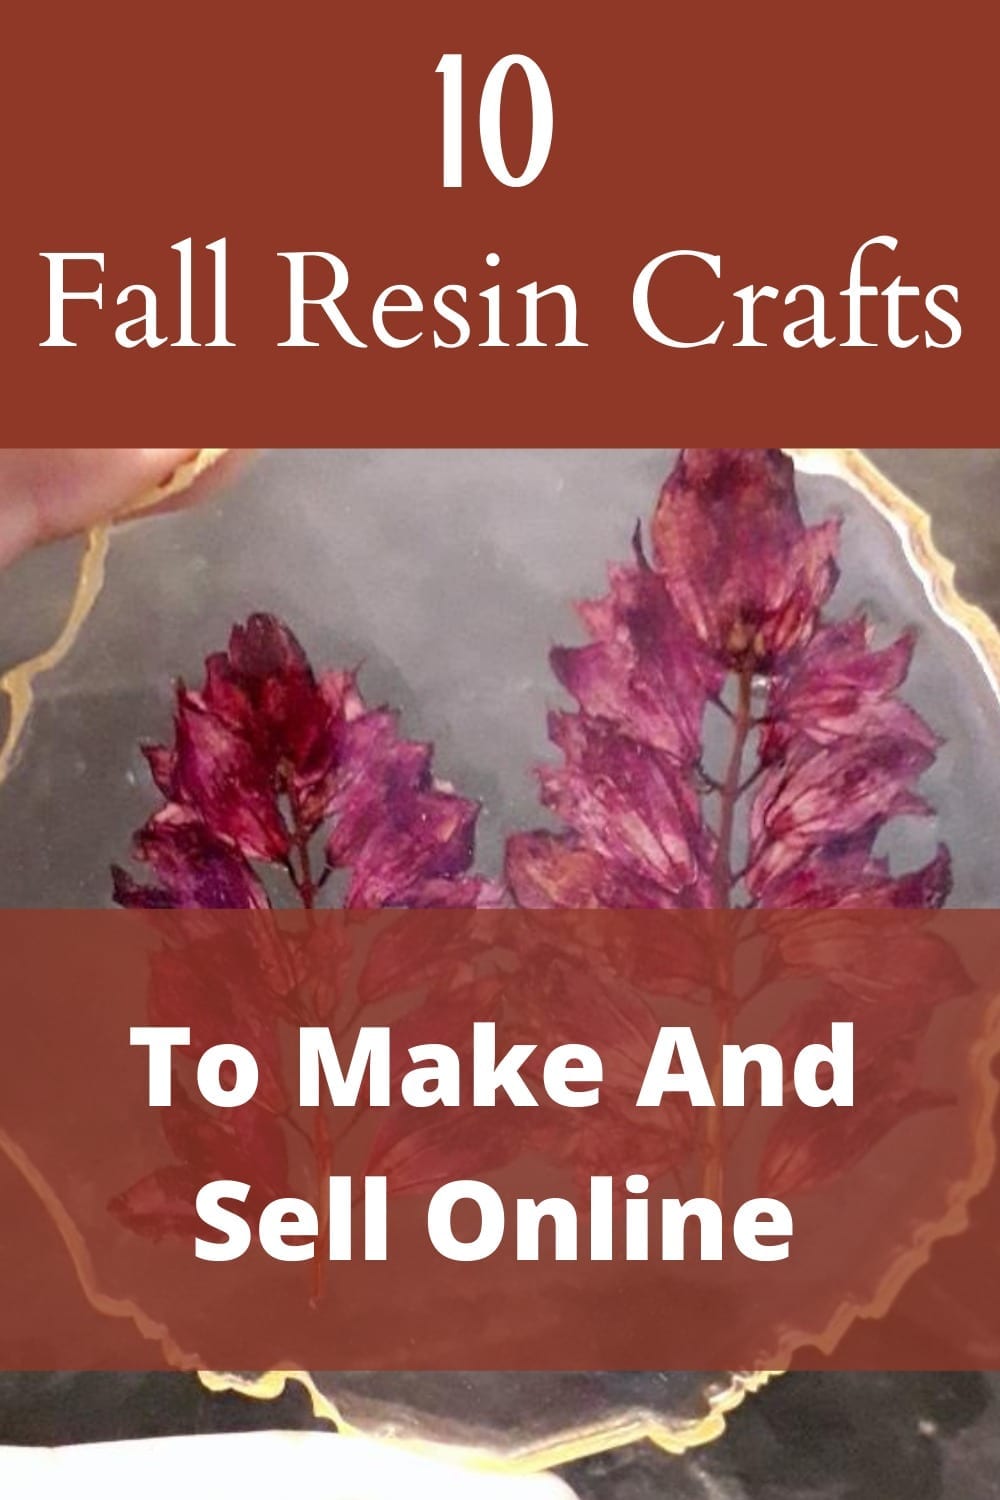 make resin crafts